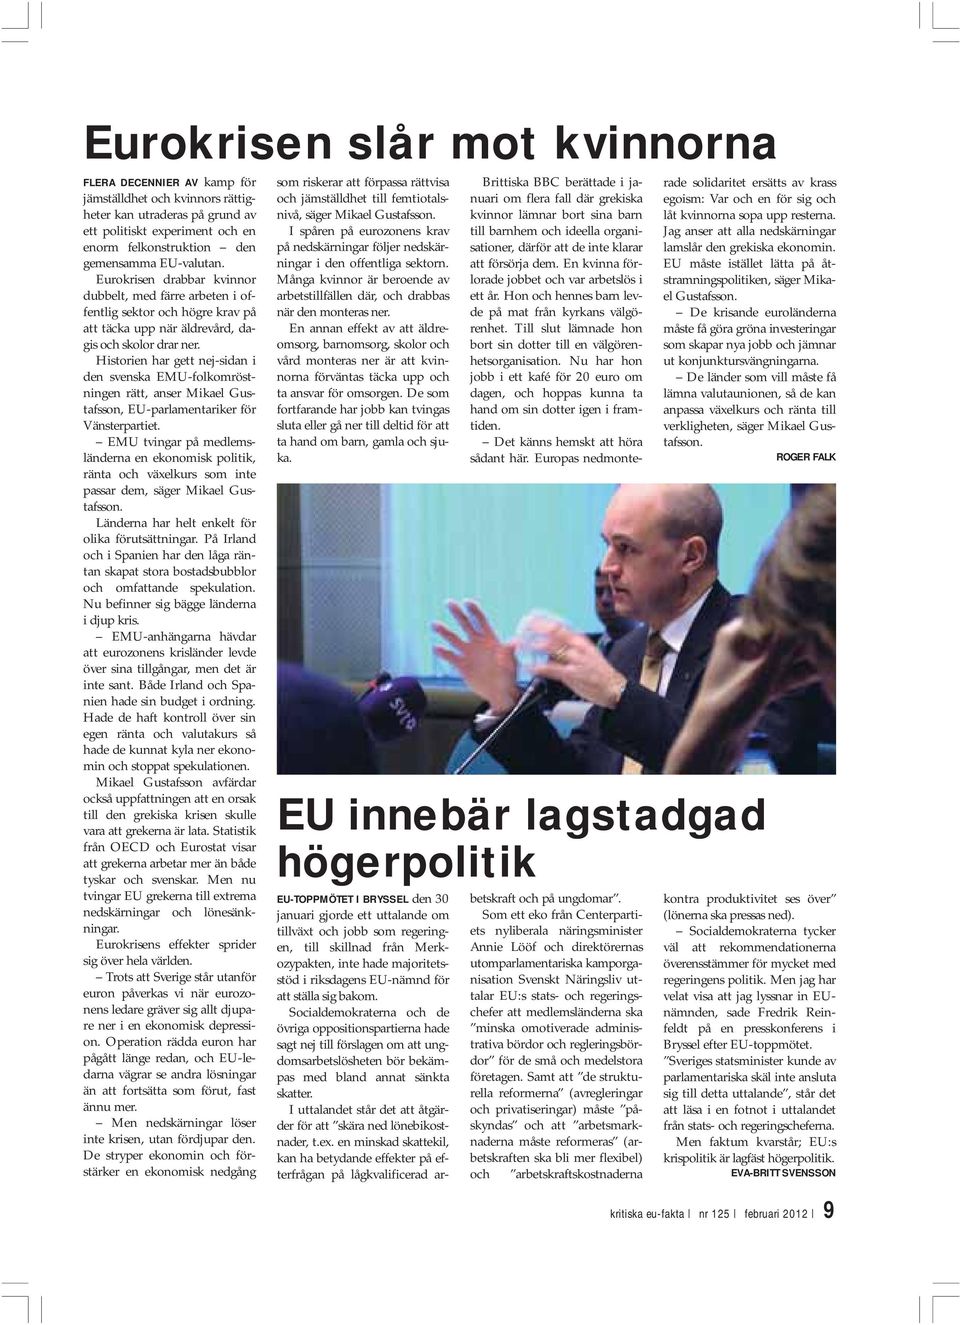 Historien har gett nej-sidan i den svenska EMU-folkomröstningen rätt, anser Mikael Gustafsson, EU-parlamentariker för Vänsterpartiet.